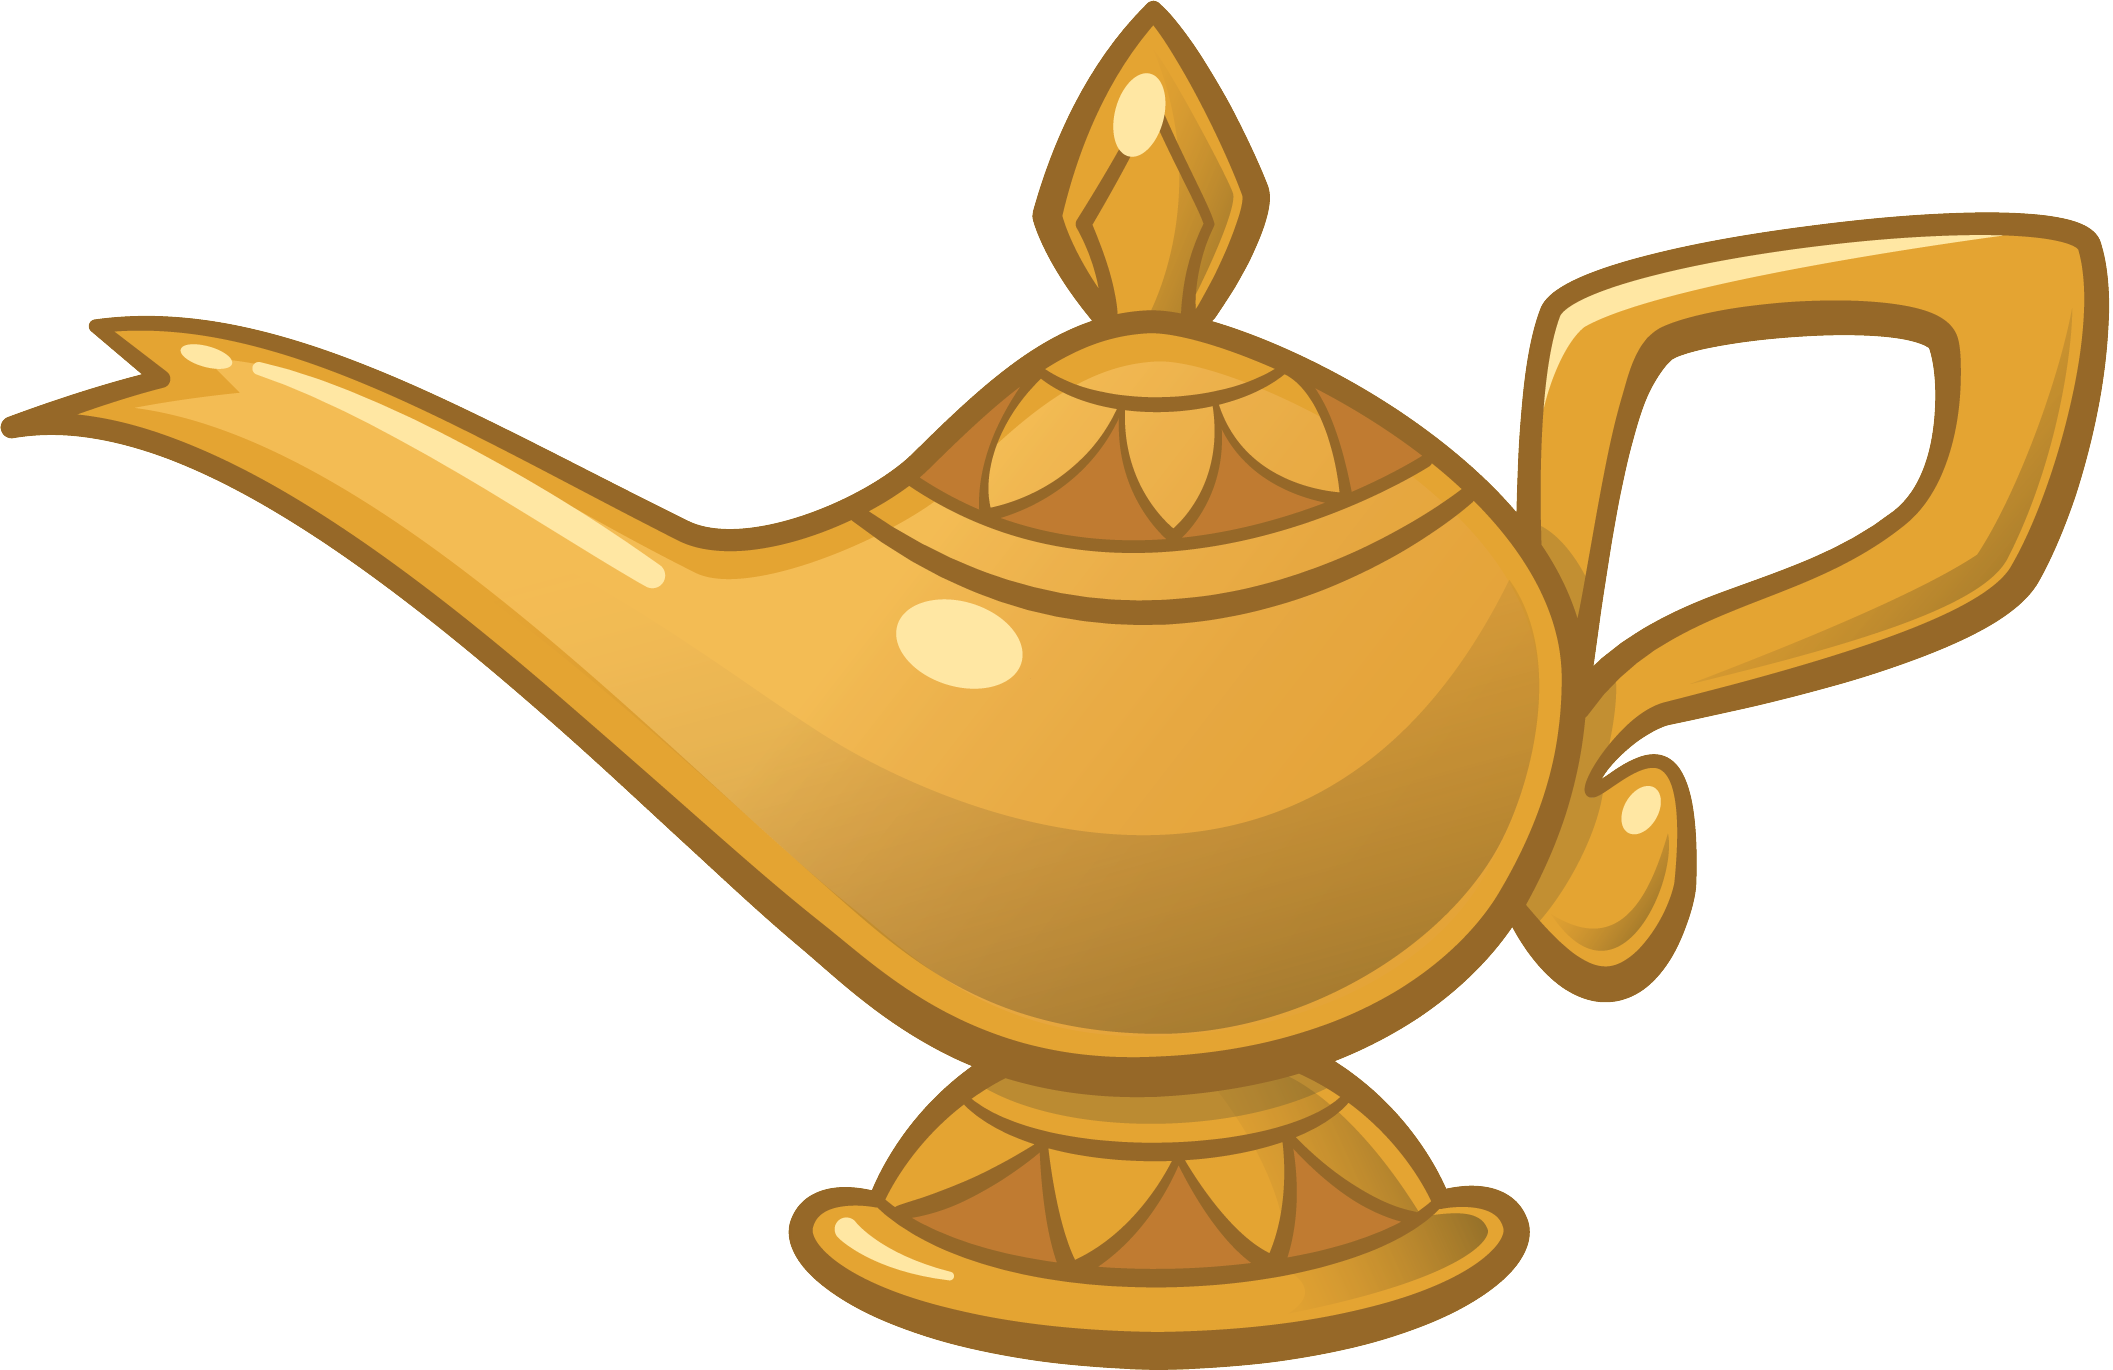 Genie Aladdin Oil lamp Jafar Light.